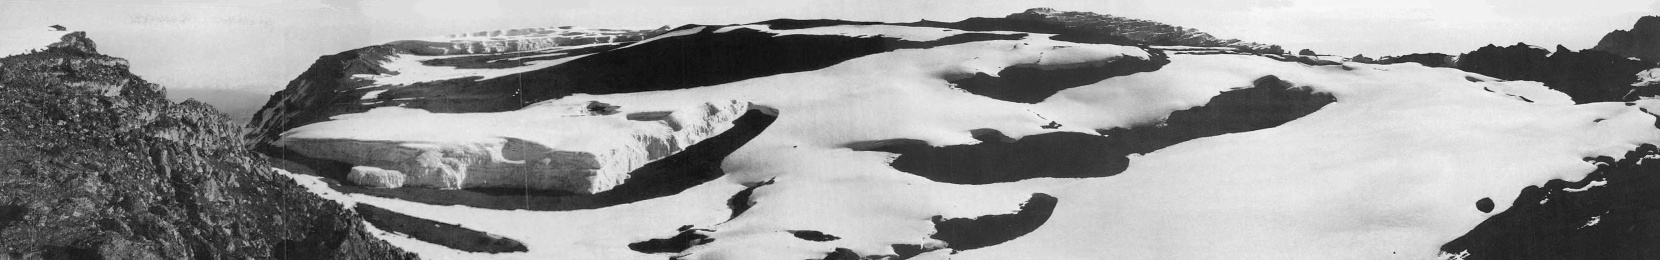 Der Furtwängler Gletscher in der Kibo-Kaldera im August 1973.Aufnahmestandpunkt am Uhuru Peak ( 5.895 m.a.S.L. ) mit Blick von Norden ( Kibo-Kaldera mit Furtwängler Gletscher) nach Osten (Mawenzi) - © Stefan Hastenrath [6]